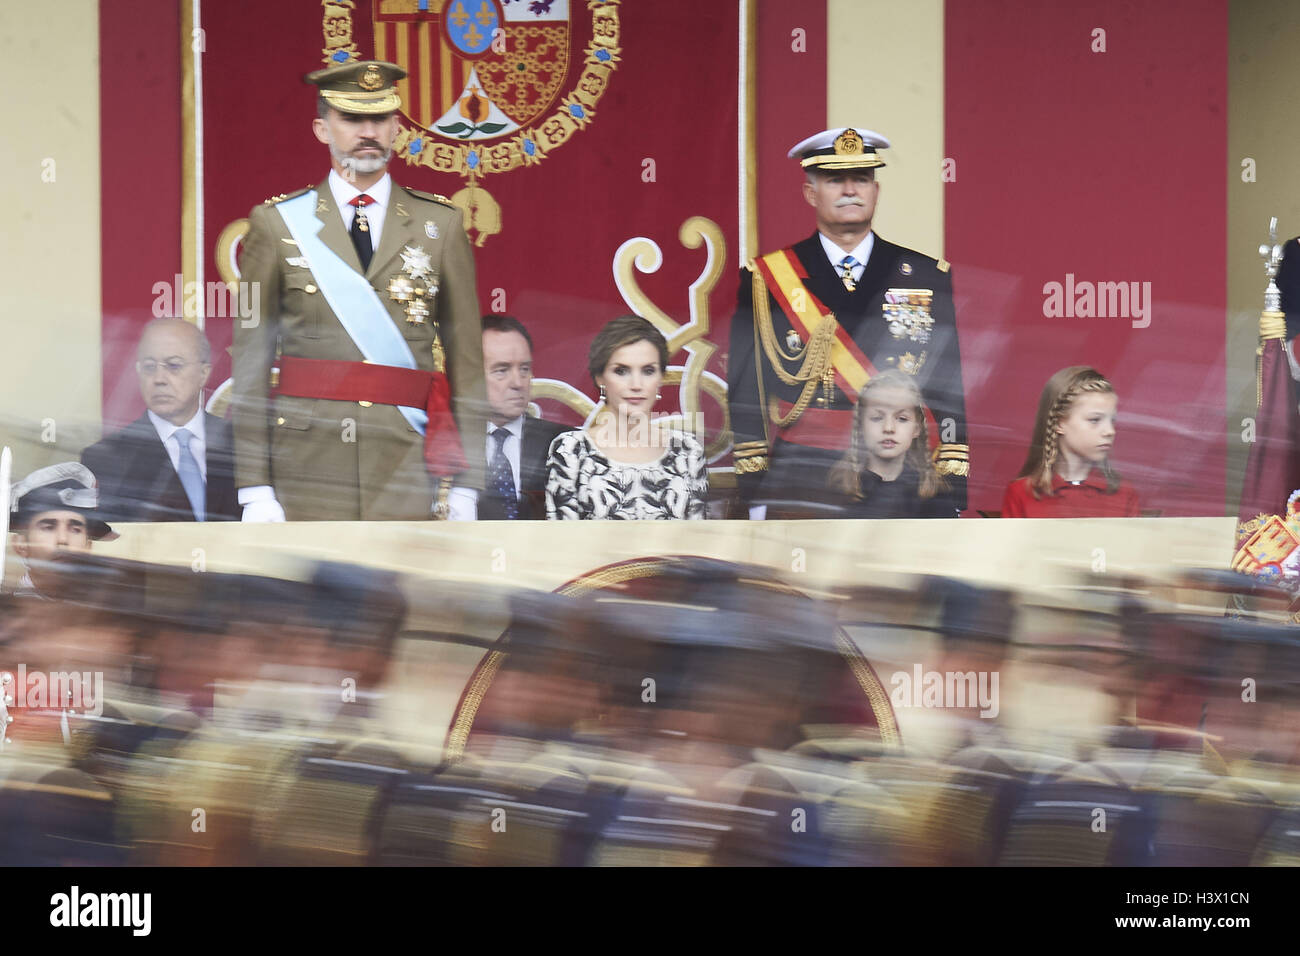 Madrid, Madrid, Espagne. 12 octobre 2016. est allé(e) à la Journée nationale de parade militaire le 12 octobre 2016 à Madrid, Espagne. Crédit : Jack Abuin/ZUMA/Alamy Fil Live News Banque D'Images